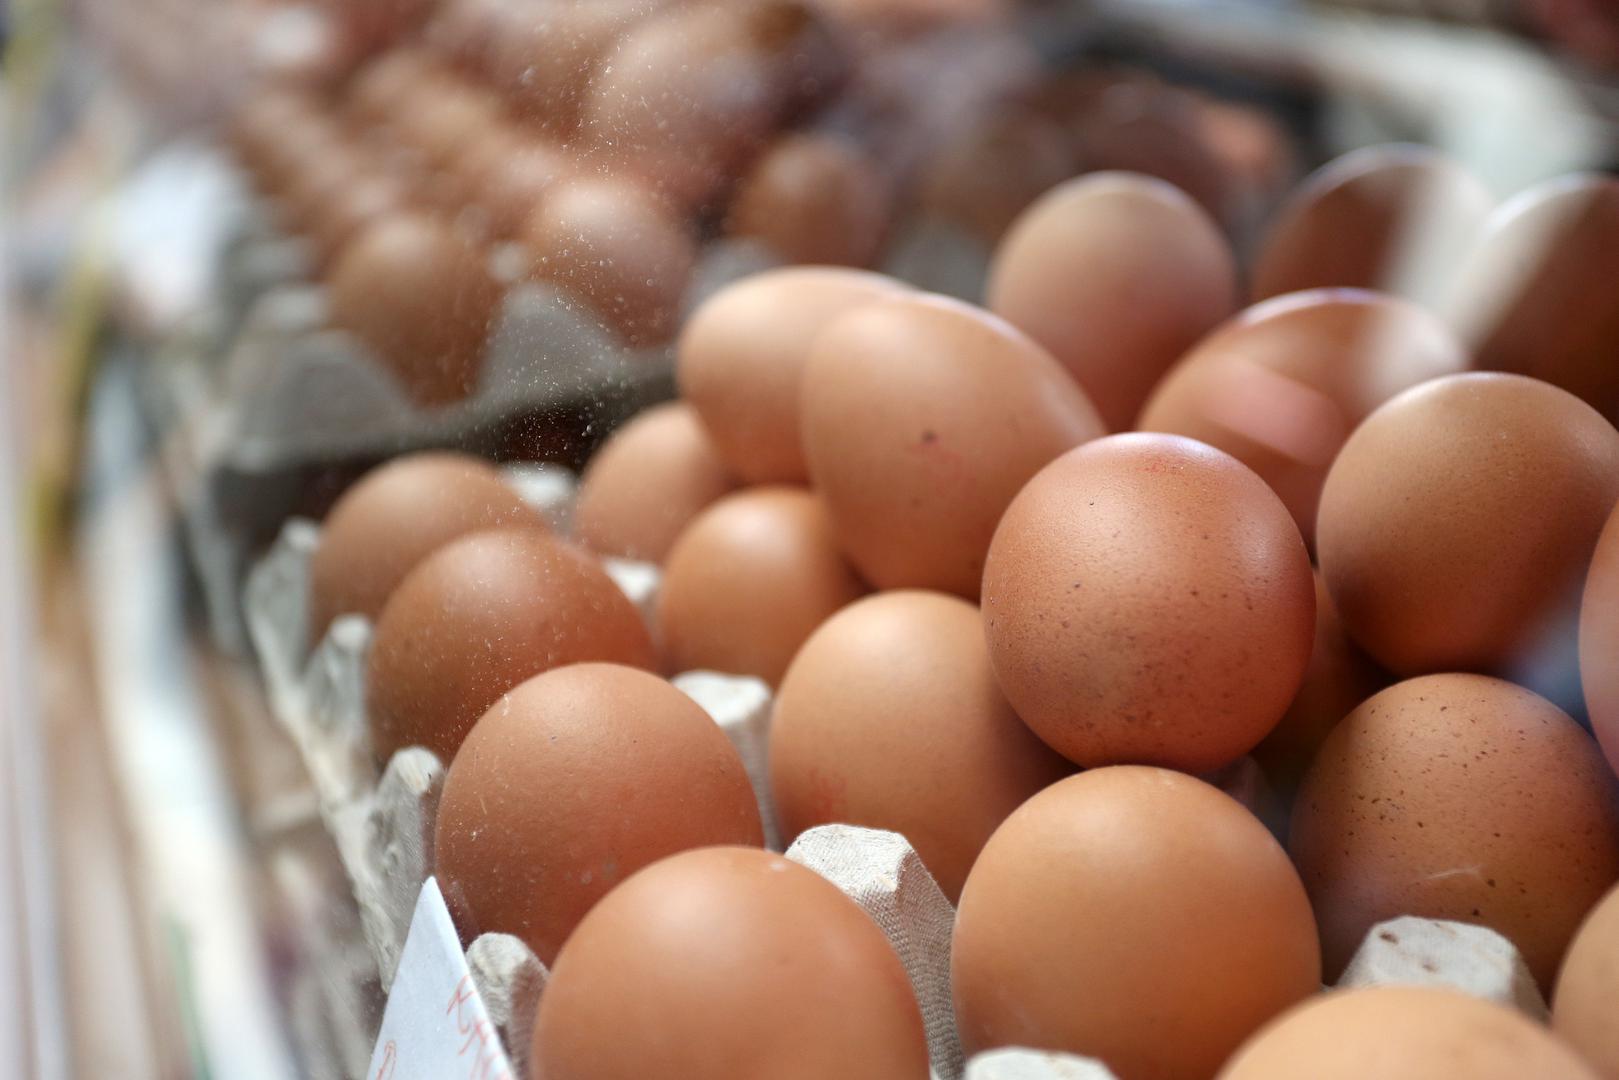 Postoji li ograničenje s dnevnom konzumacijom jaja? Nutricionistica Keri Gans tvrdi da su za prosječnog čovjeka dva jaja na dan sasvim u redu. Treba imati na umu i što jedete uz jaja, kako se ne bi doveli do neželjenih kilograma. Nutricionistica Gans preporučuje pripremu na malo maslinova ulja i serviranje uz kuhano povrće i kruh od cjelovitih žitarica. 